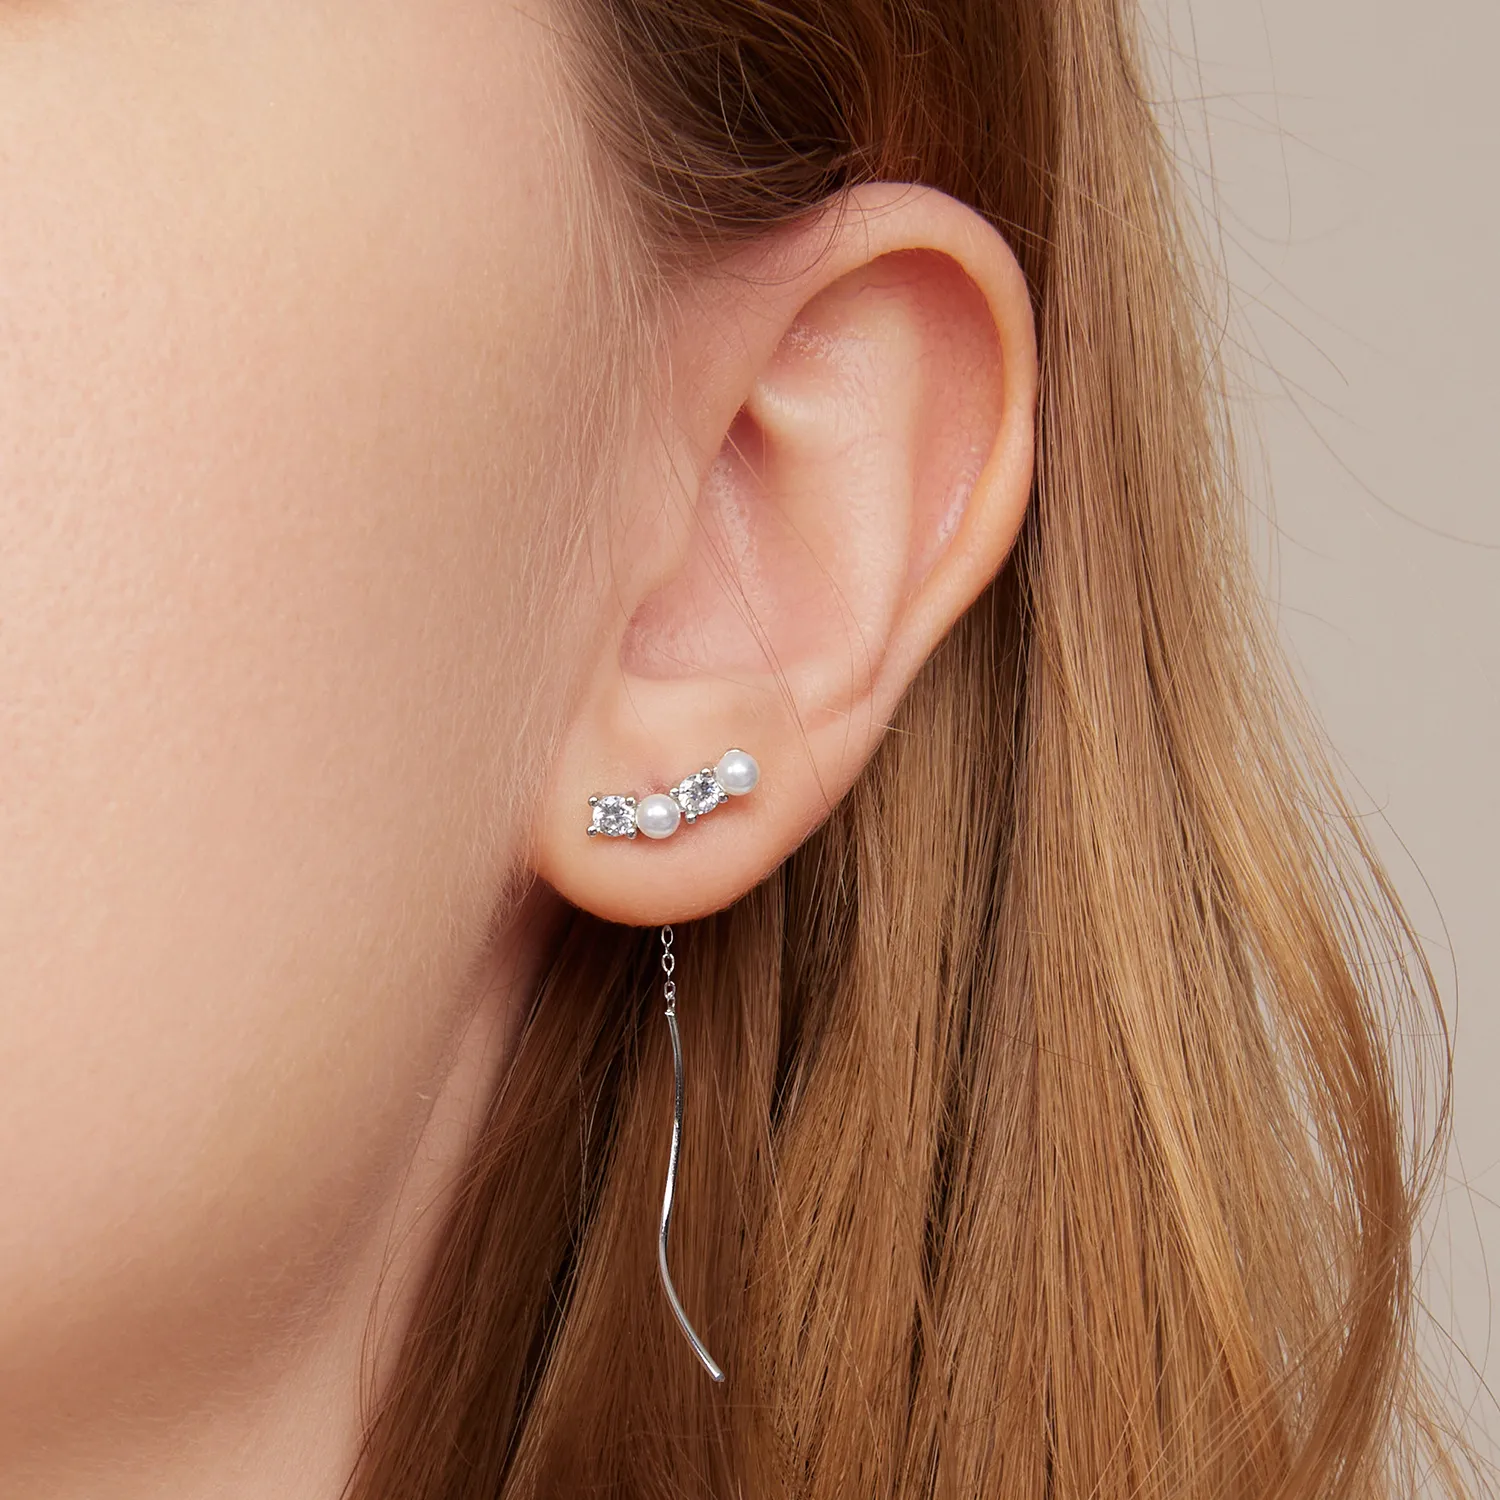 Pandora Style Bead Zircon Hanging Earrings - SCE1448